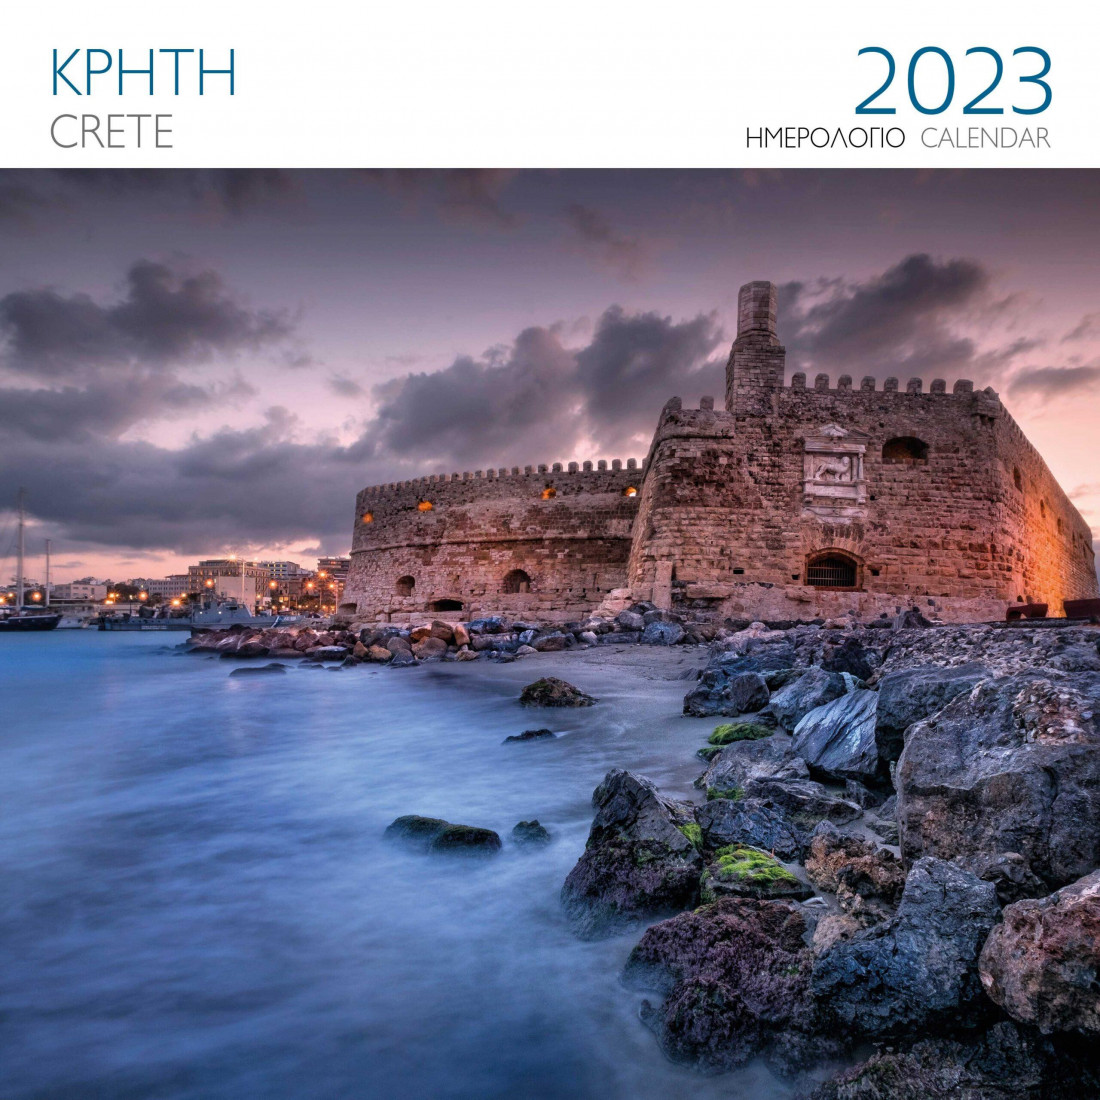 Μίλητος, Ημερολόγιο 2023, Επιτοίχιο, Ελλάδα, Κρήτη